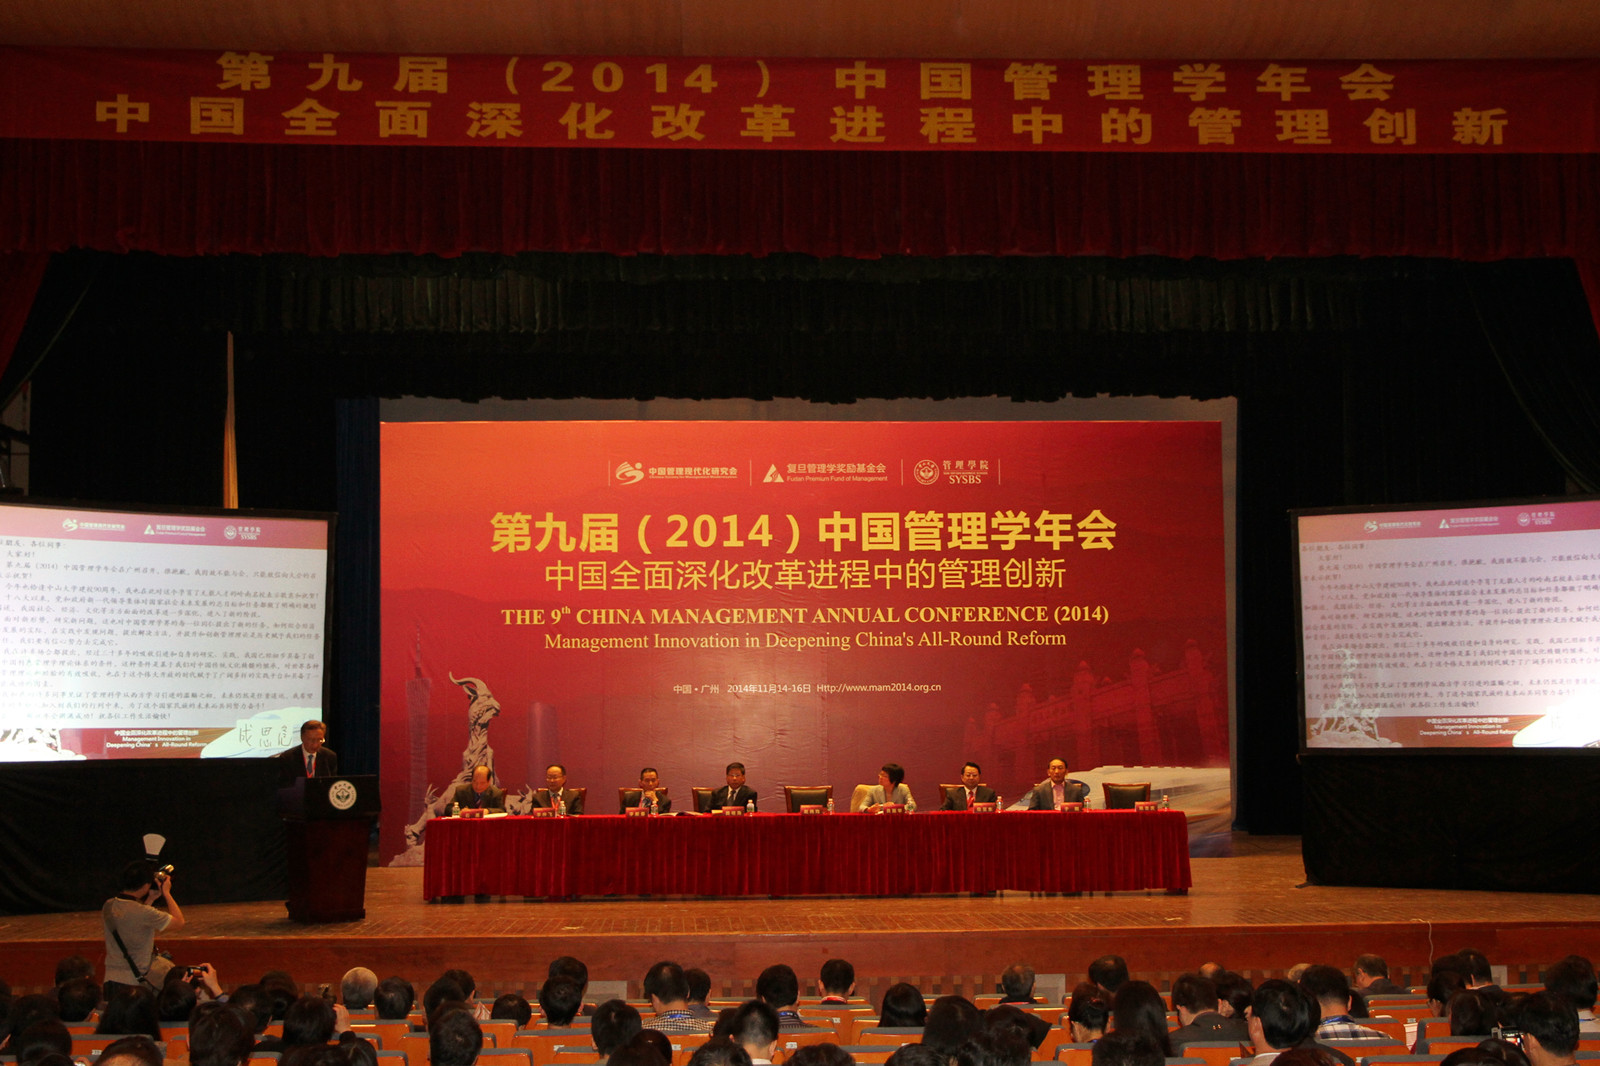 2014年中国管理学年会在穗举行